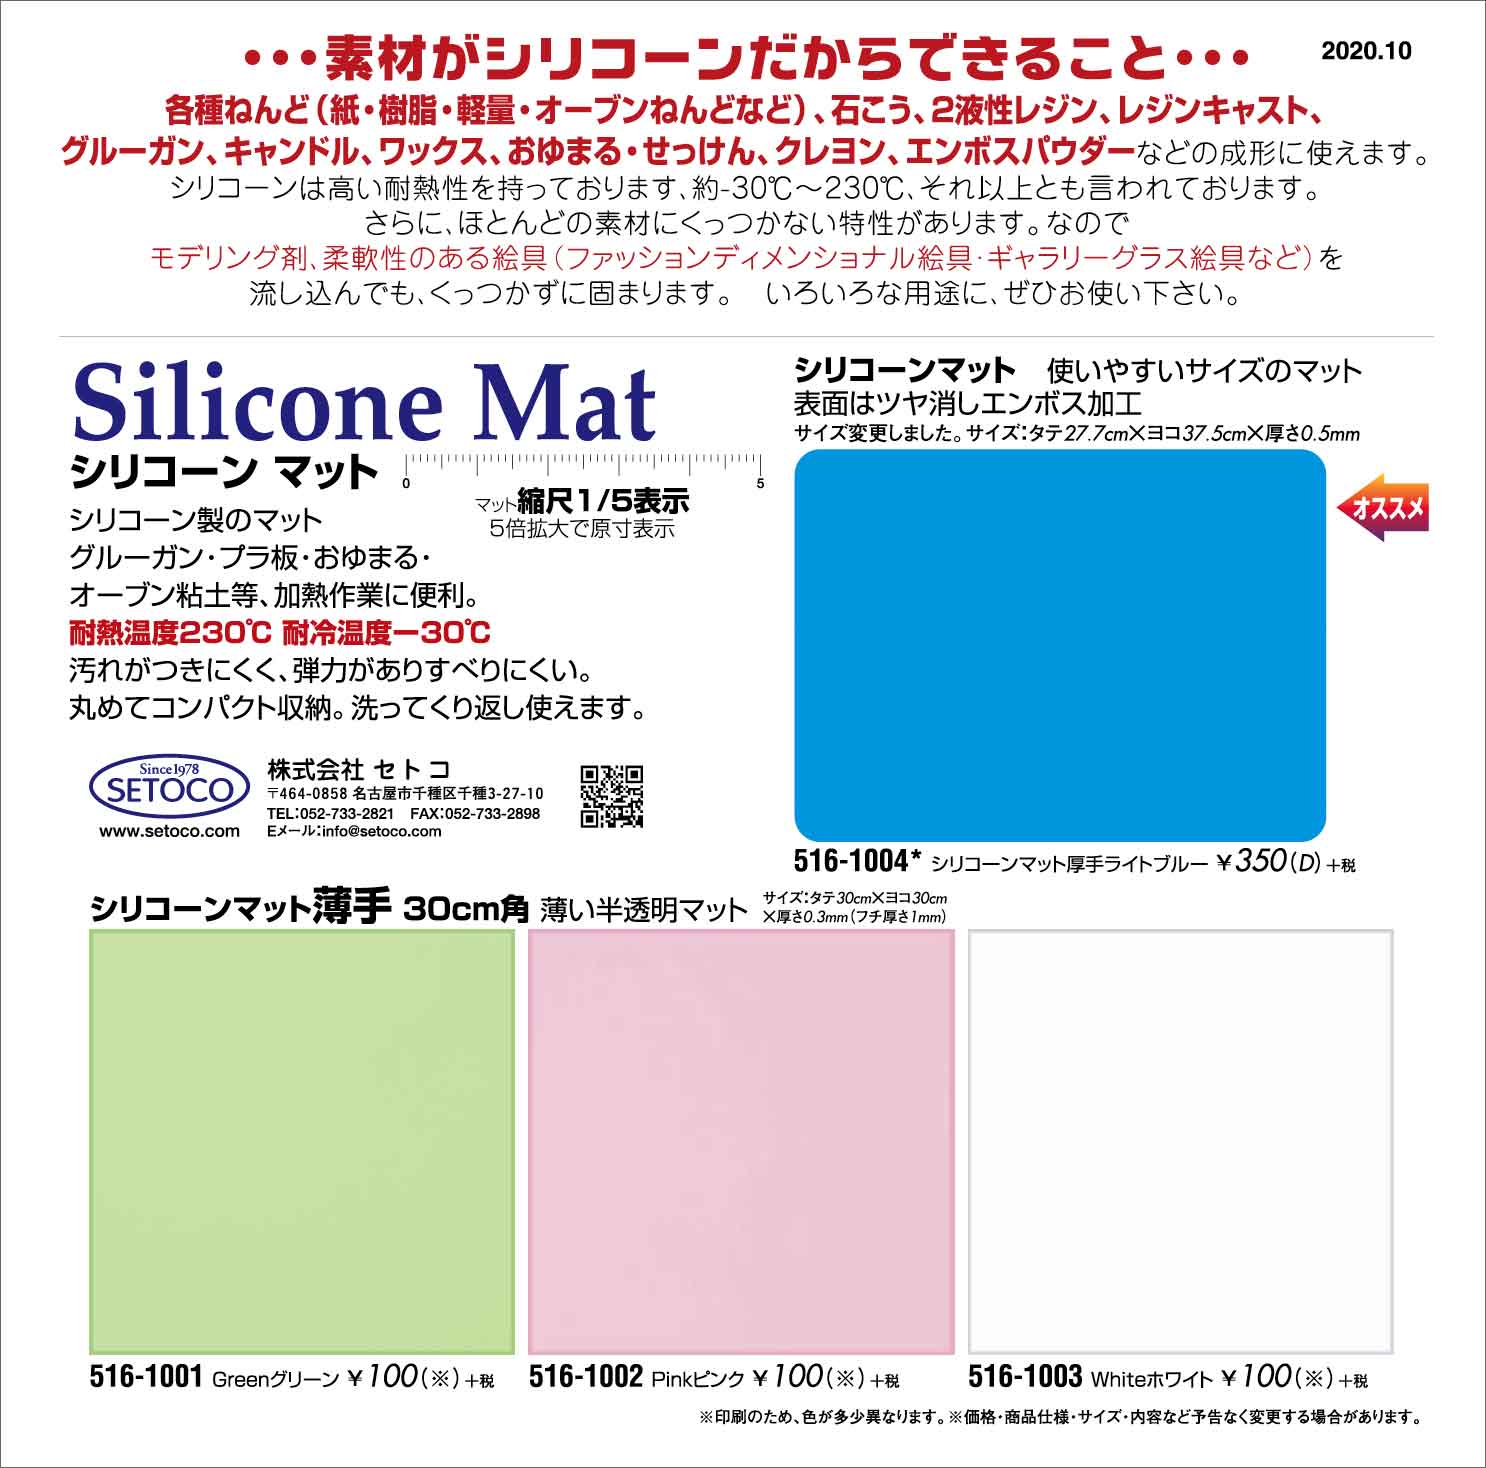 Silicone Mat,シリコーンマット,516-1004,516-1001,516-1002,516-1003